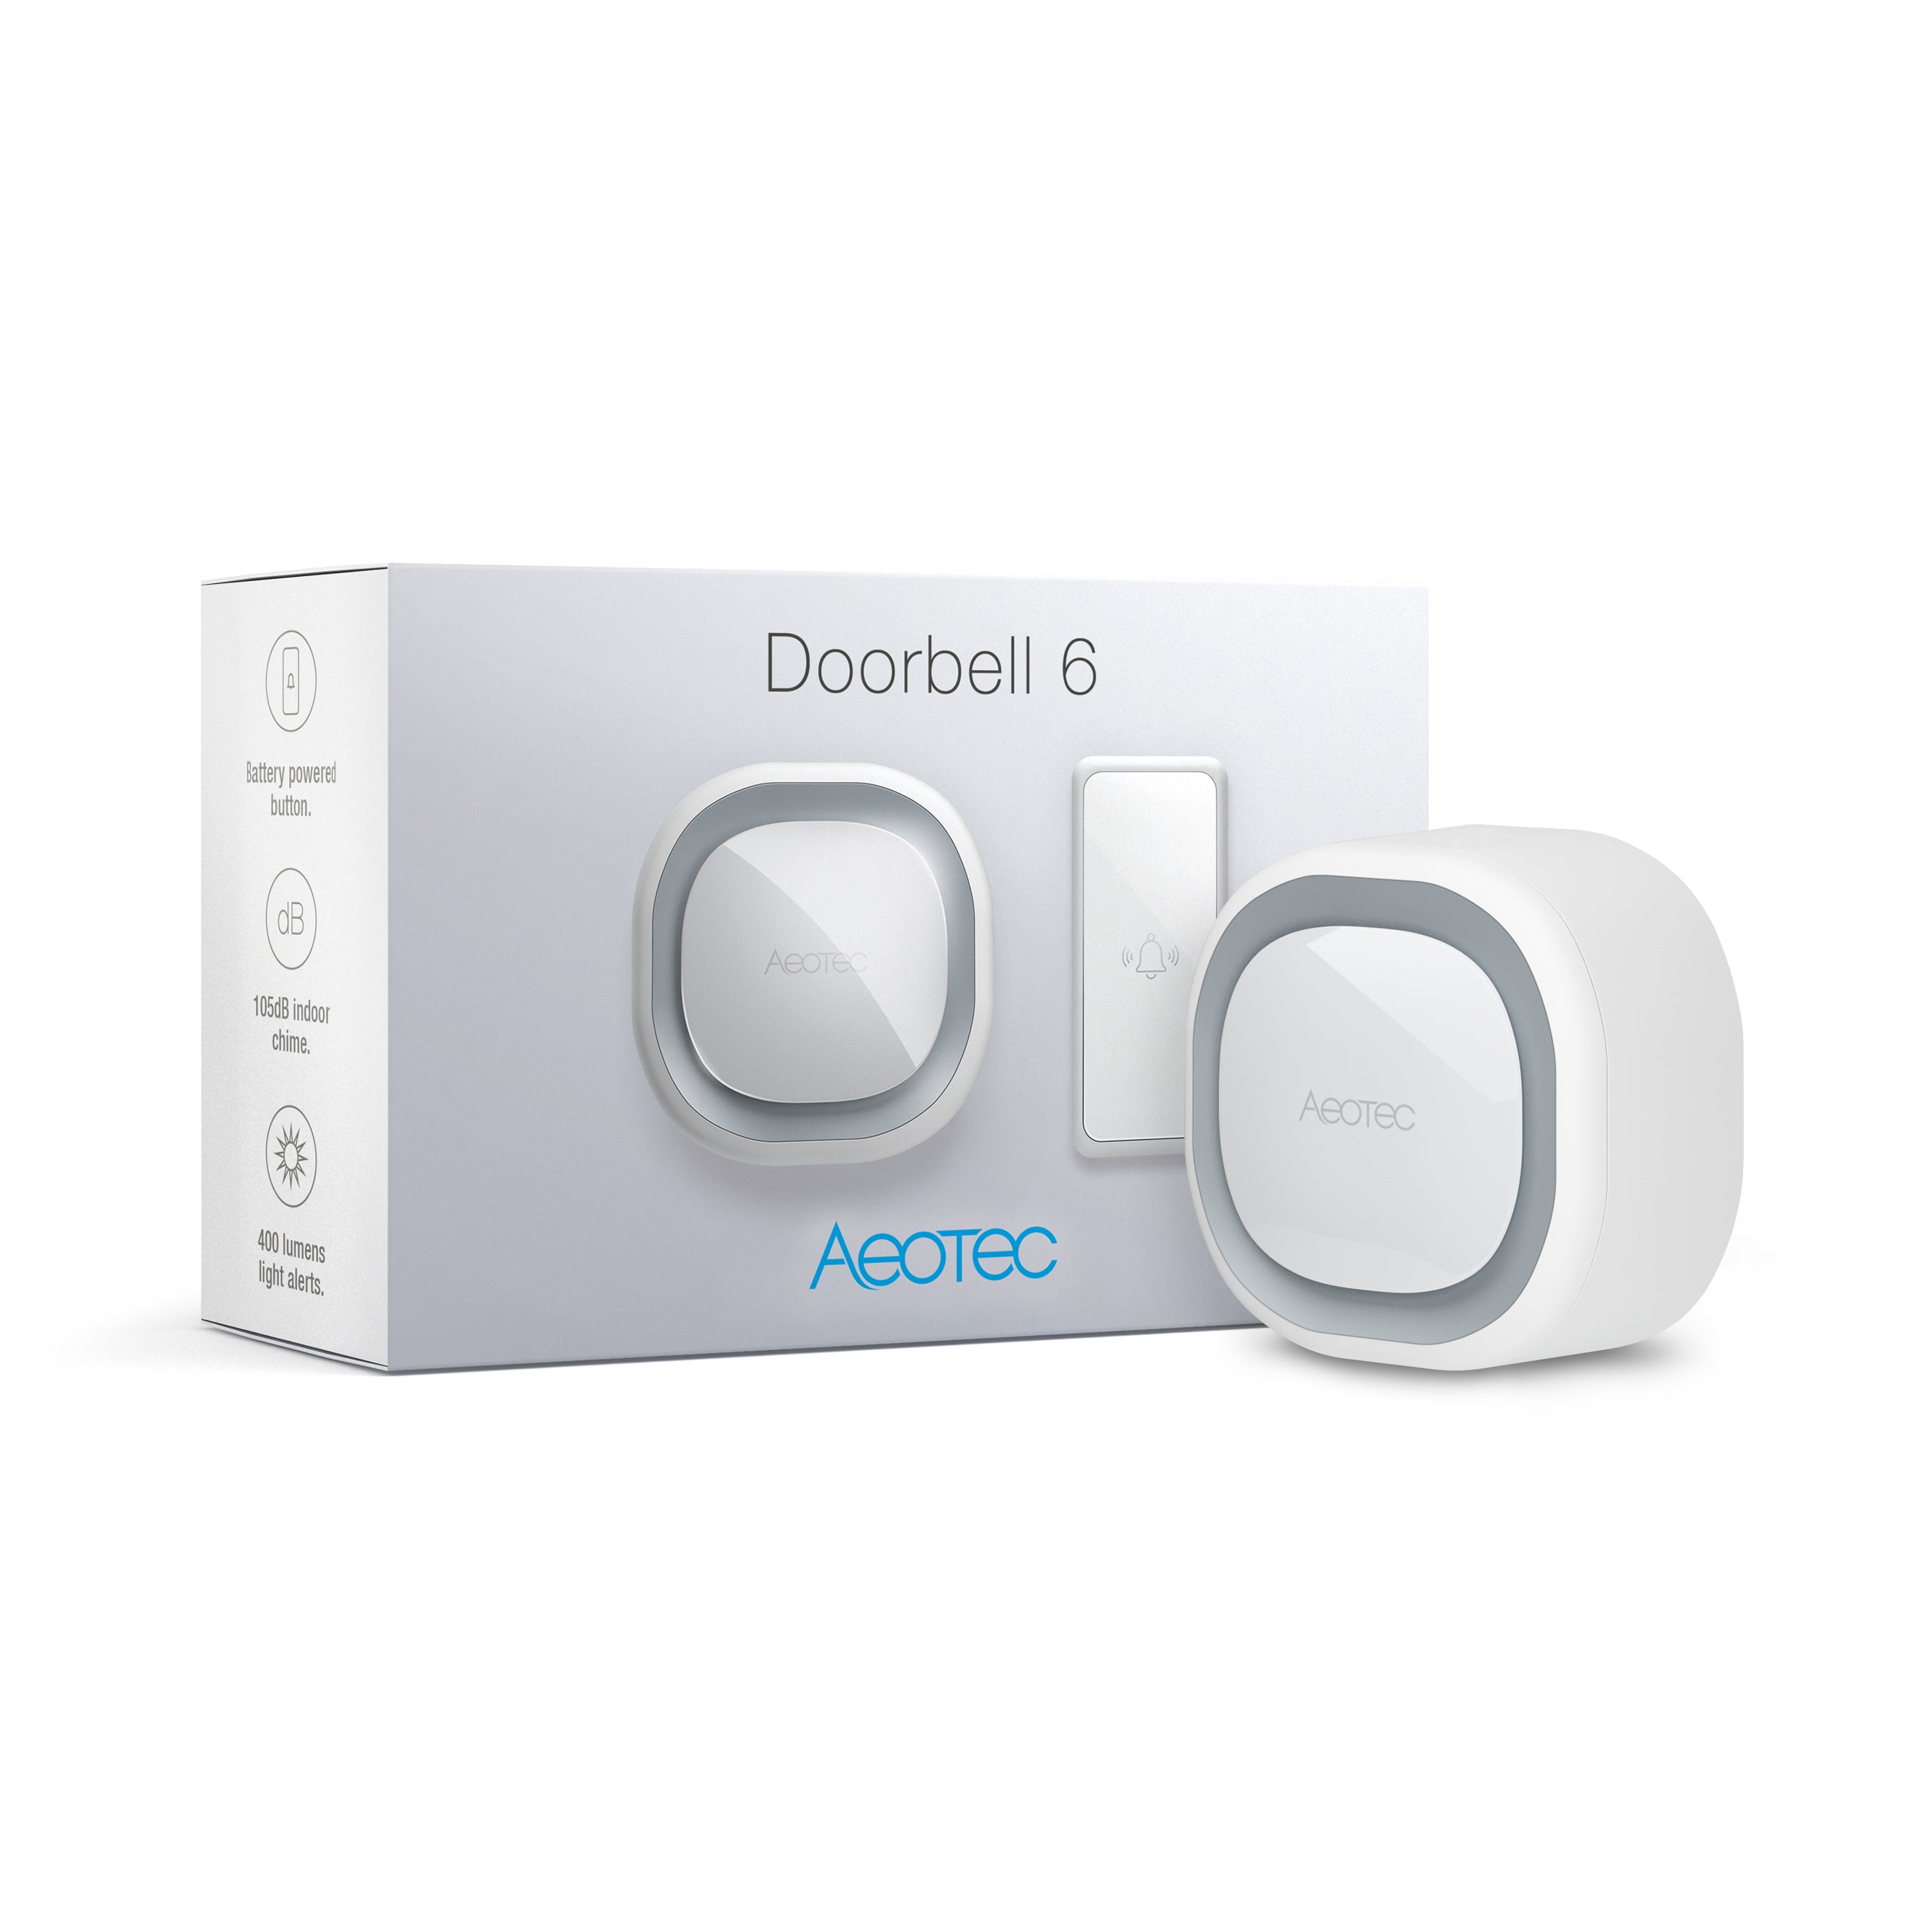 Doorbell 6